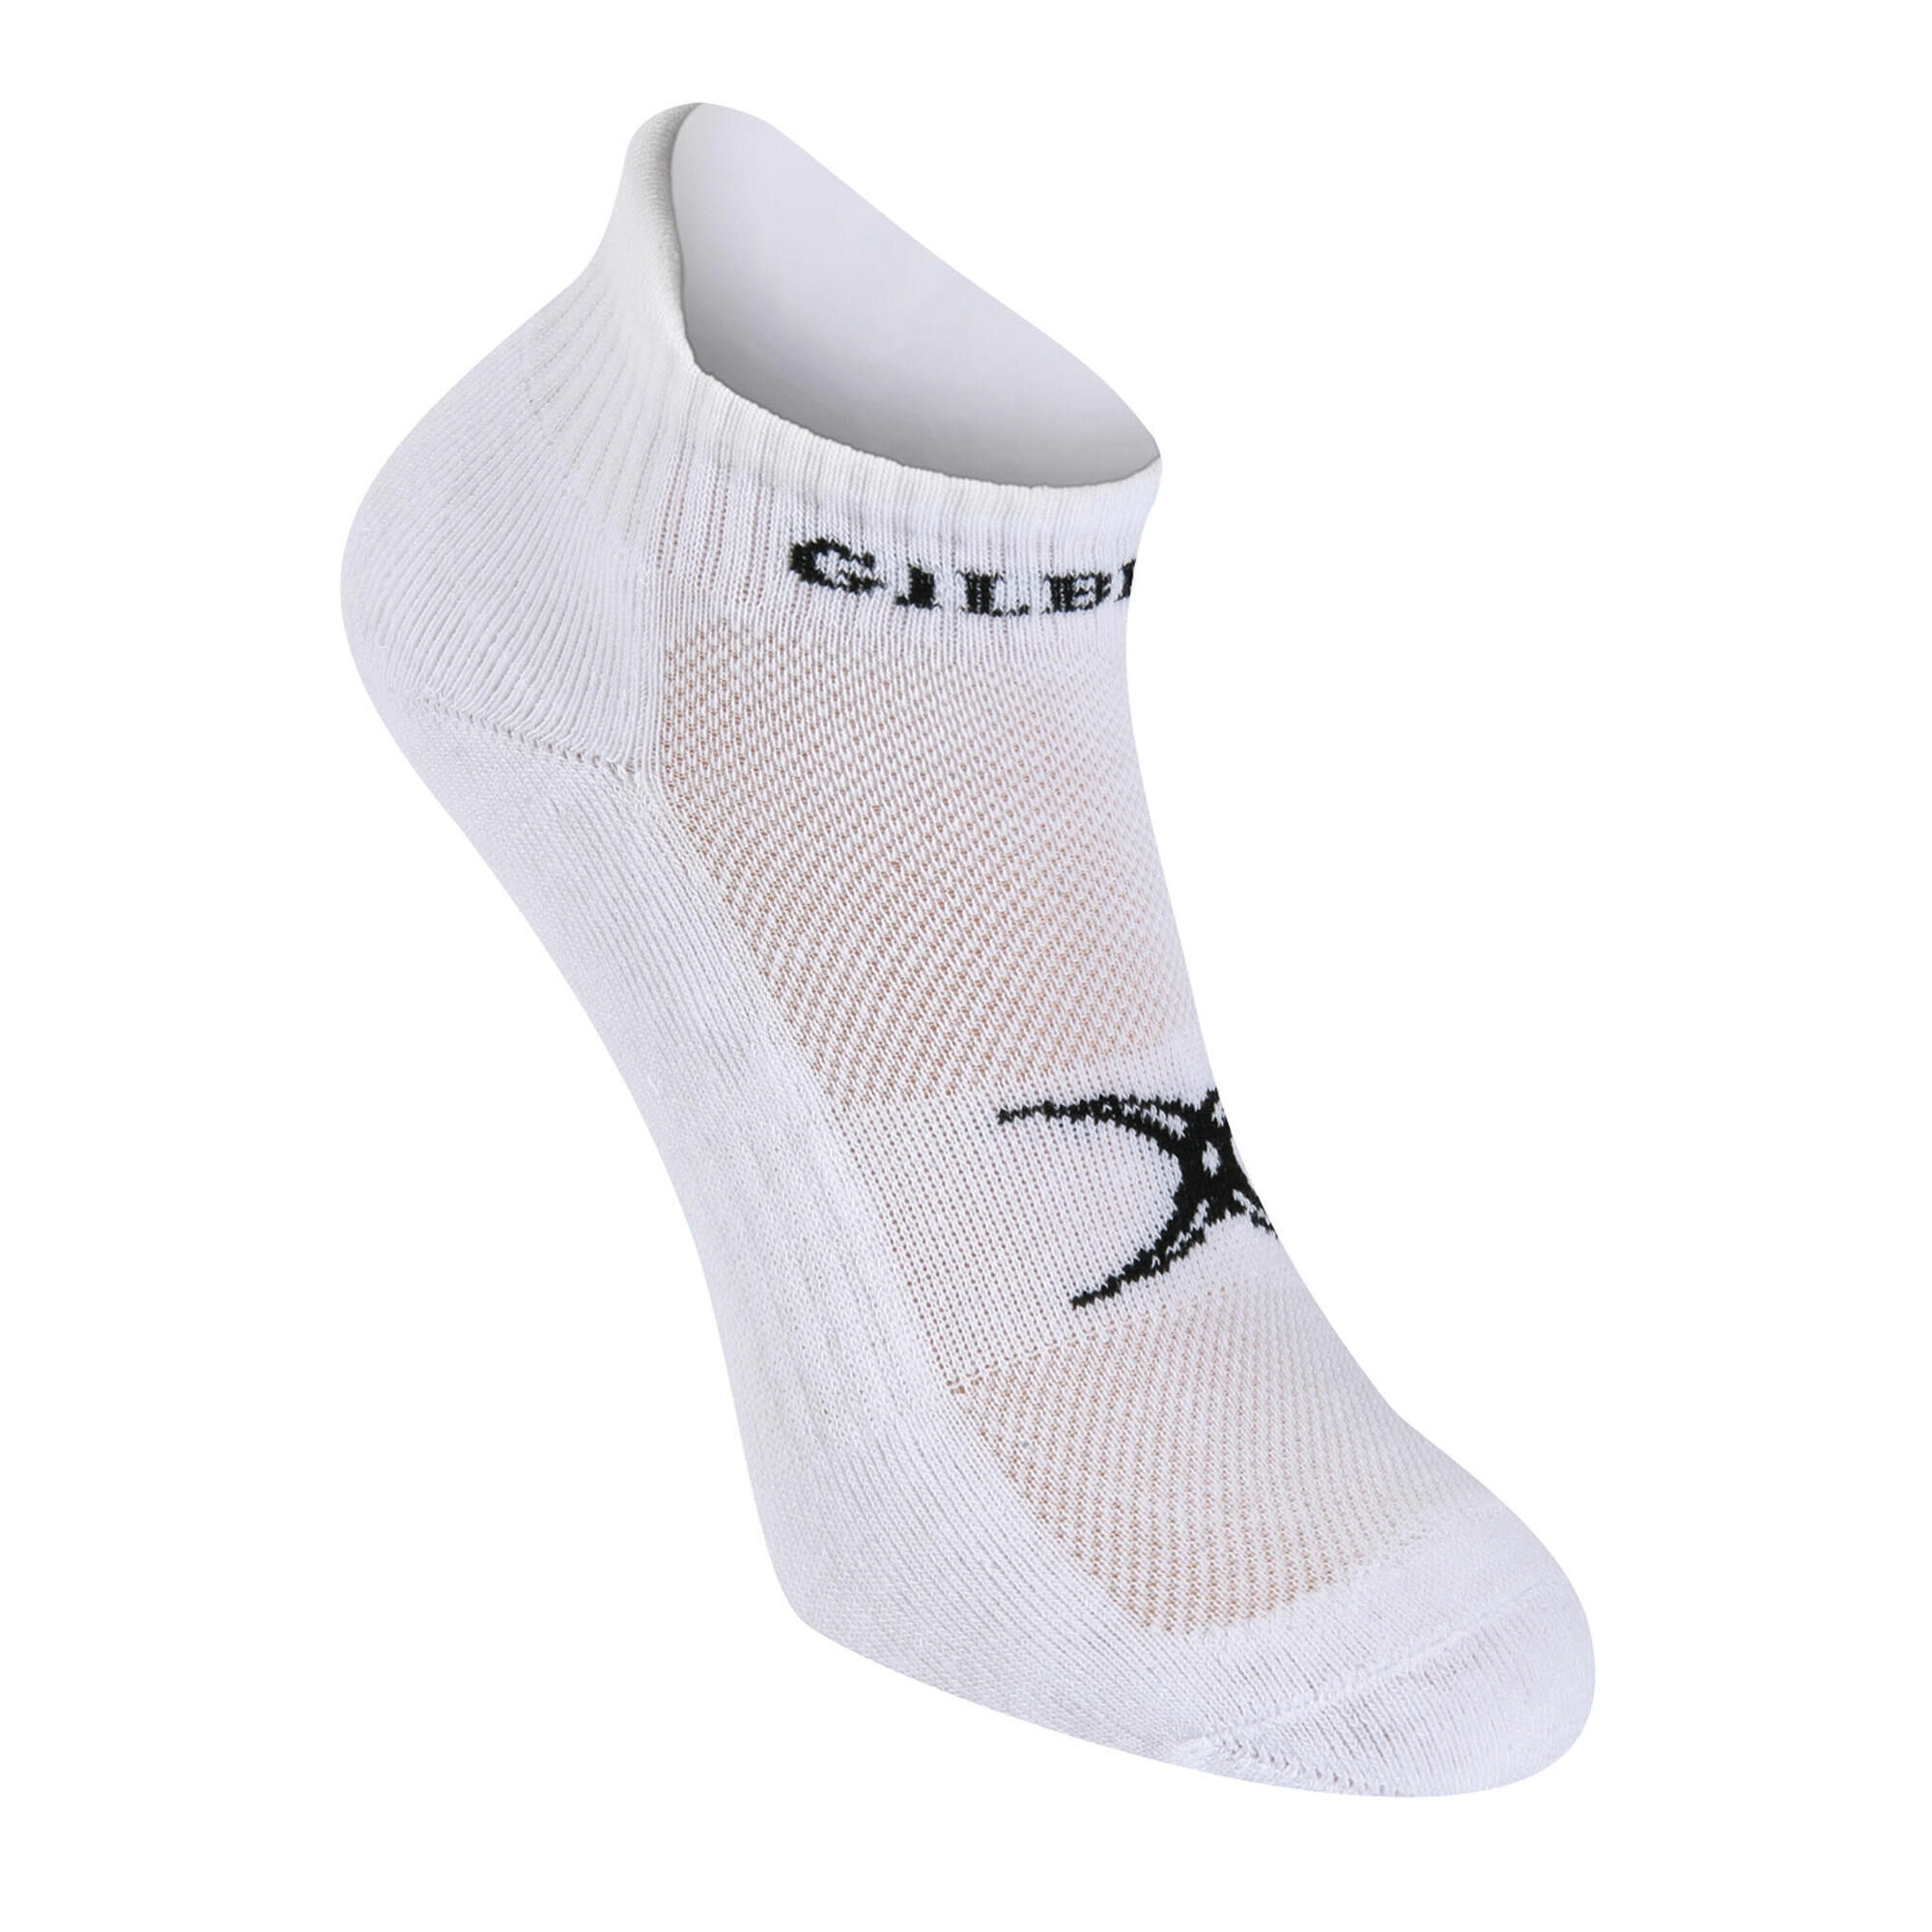 GILBERT Gym Socks, White